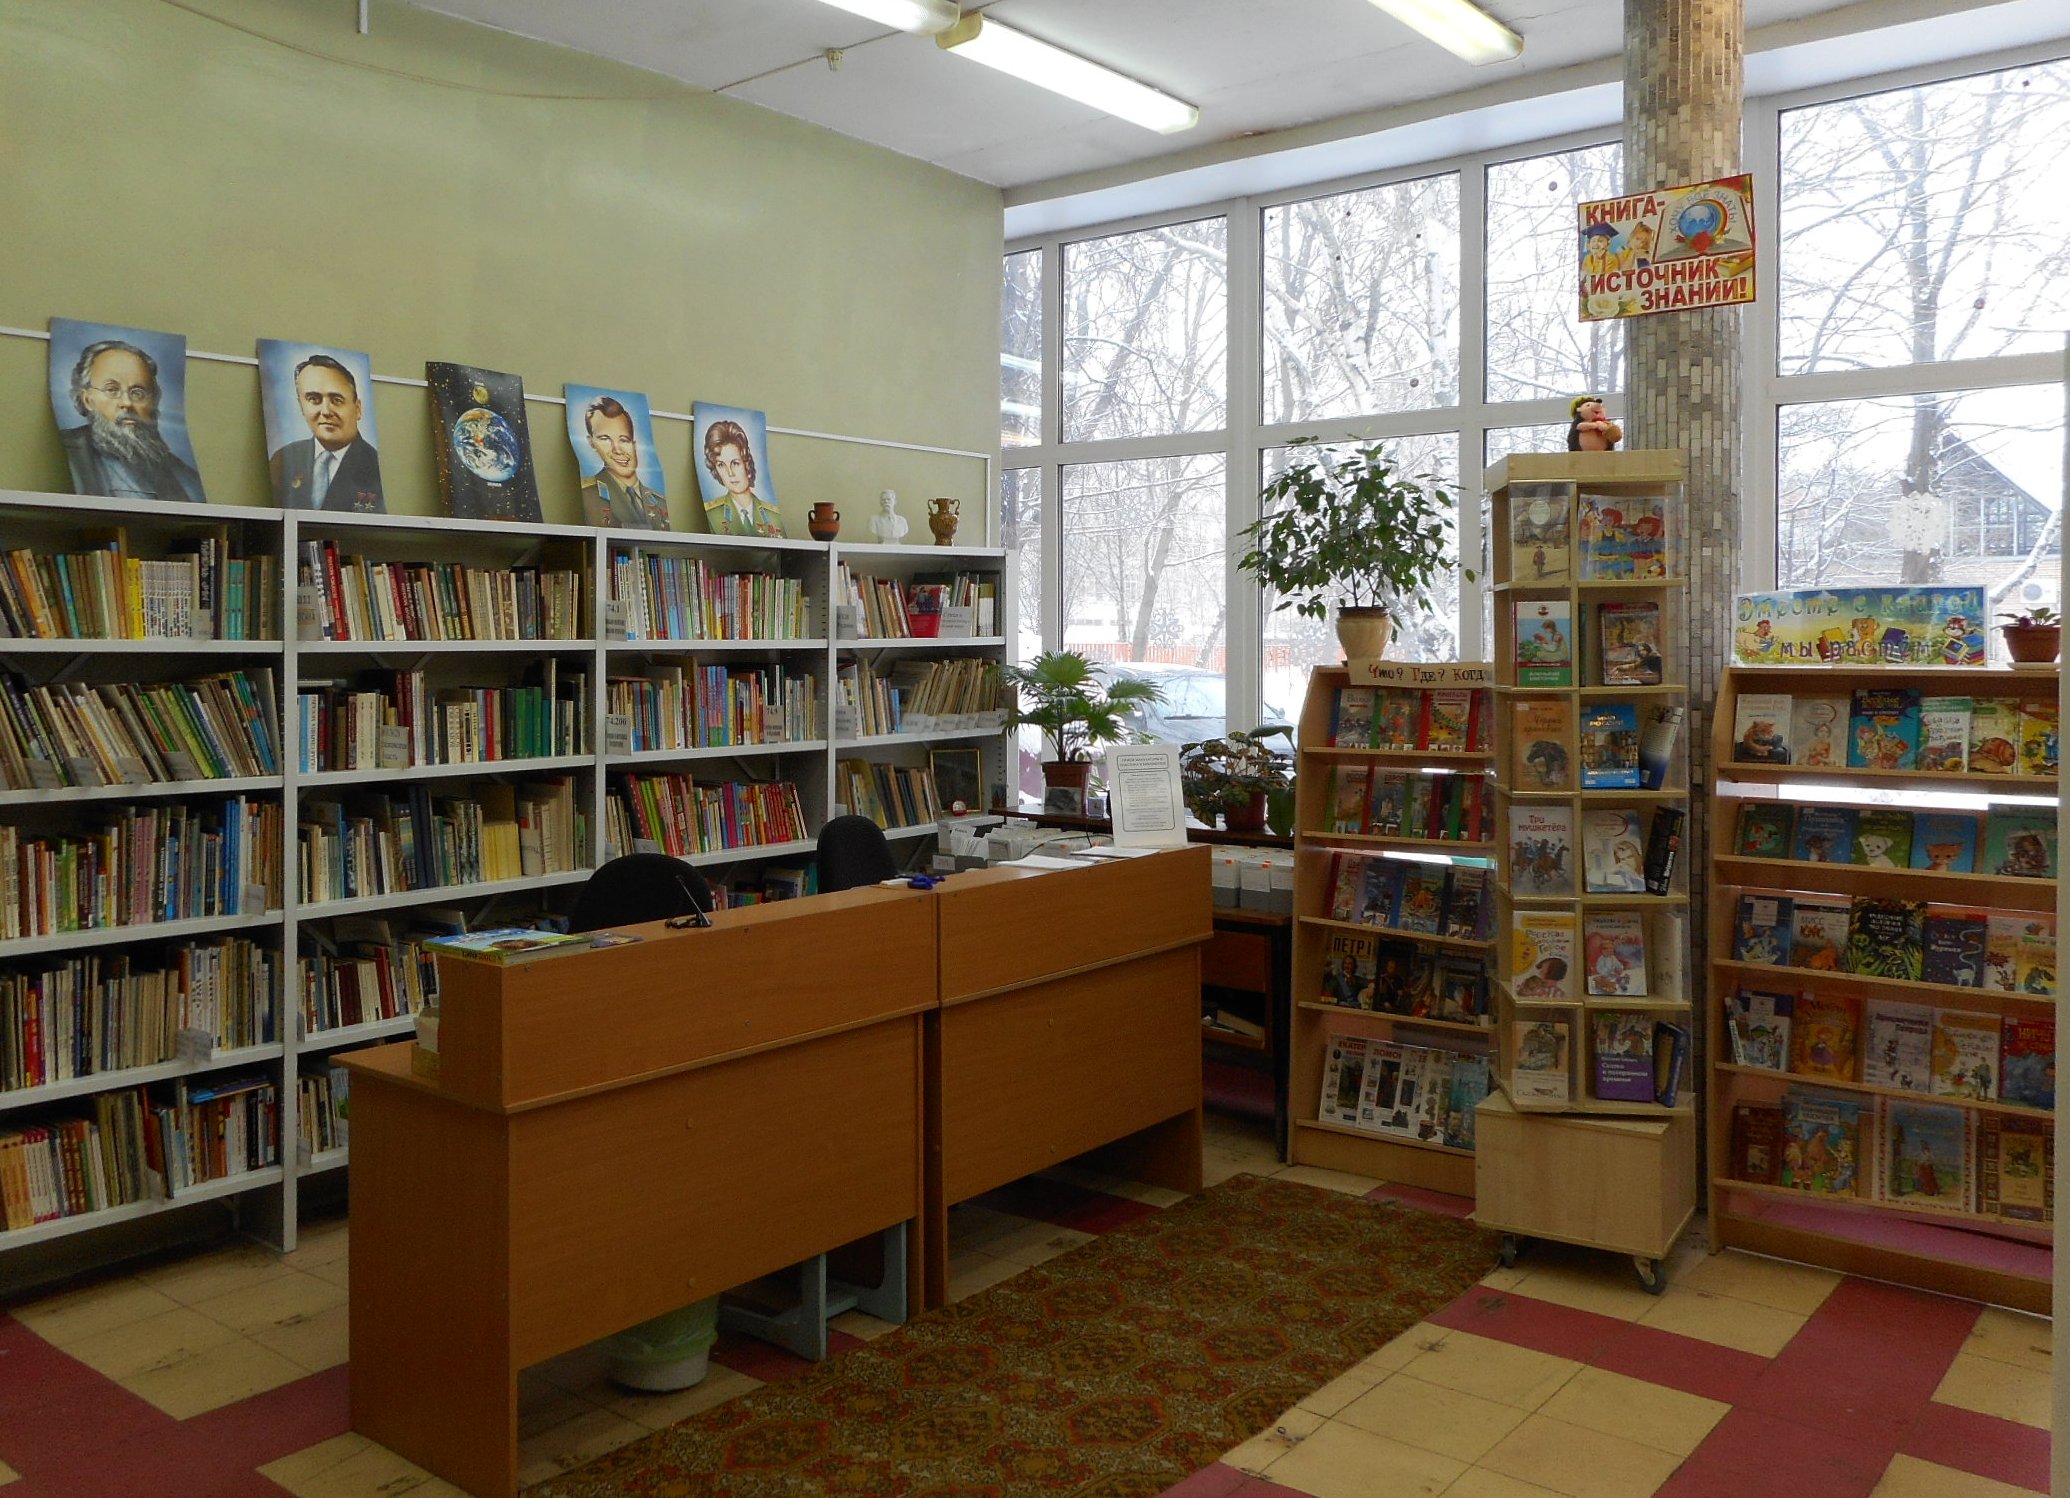 Библиотека для 7 лет